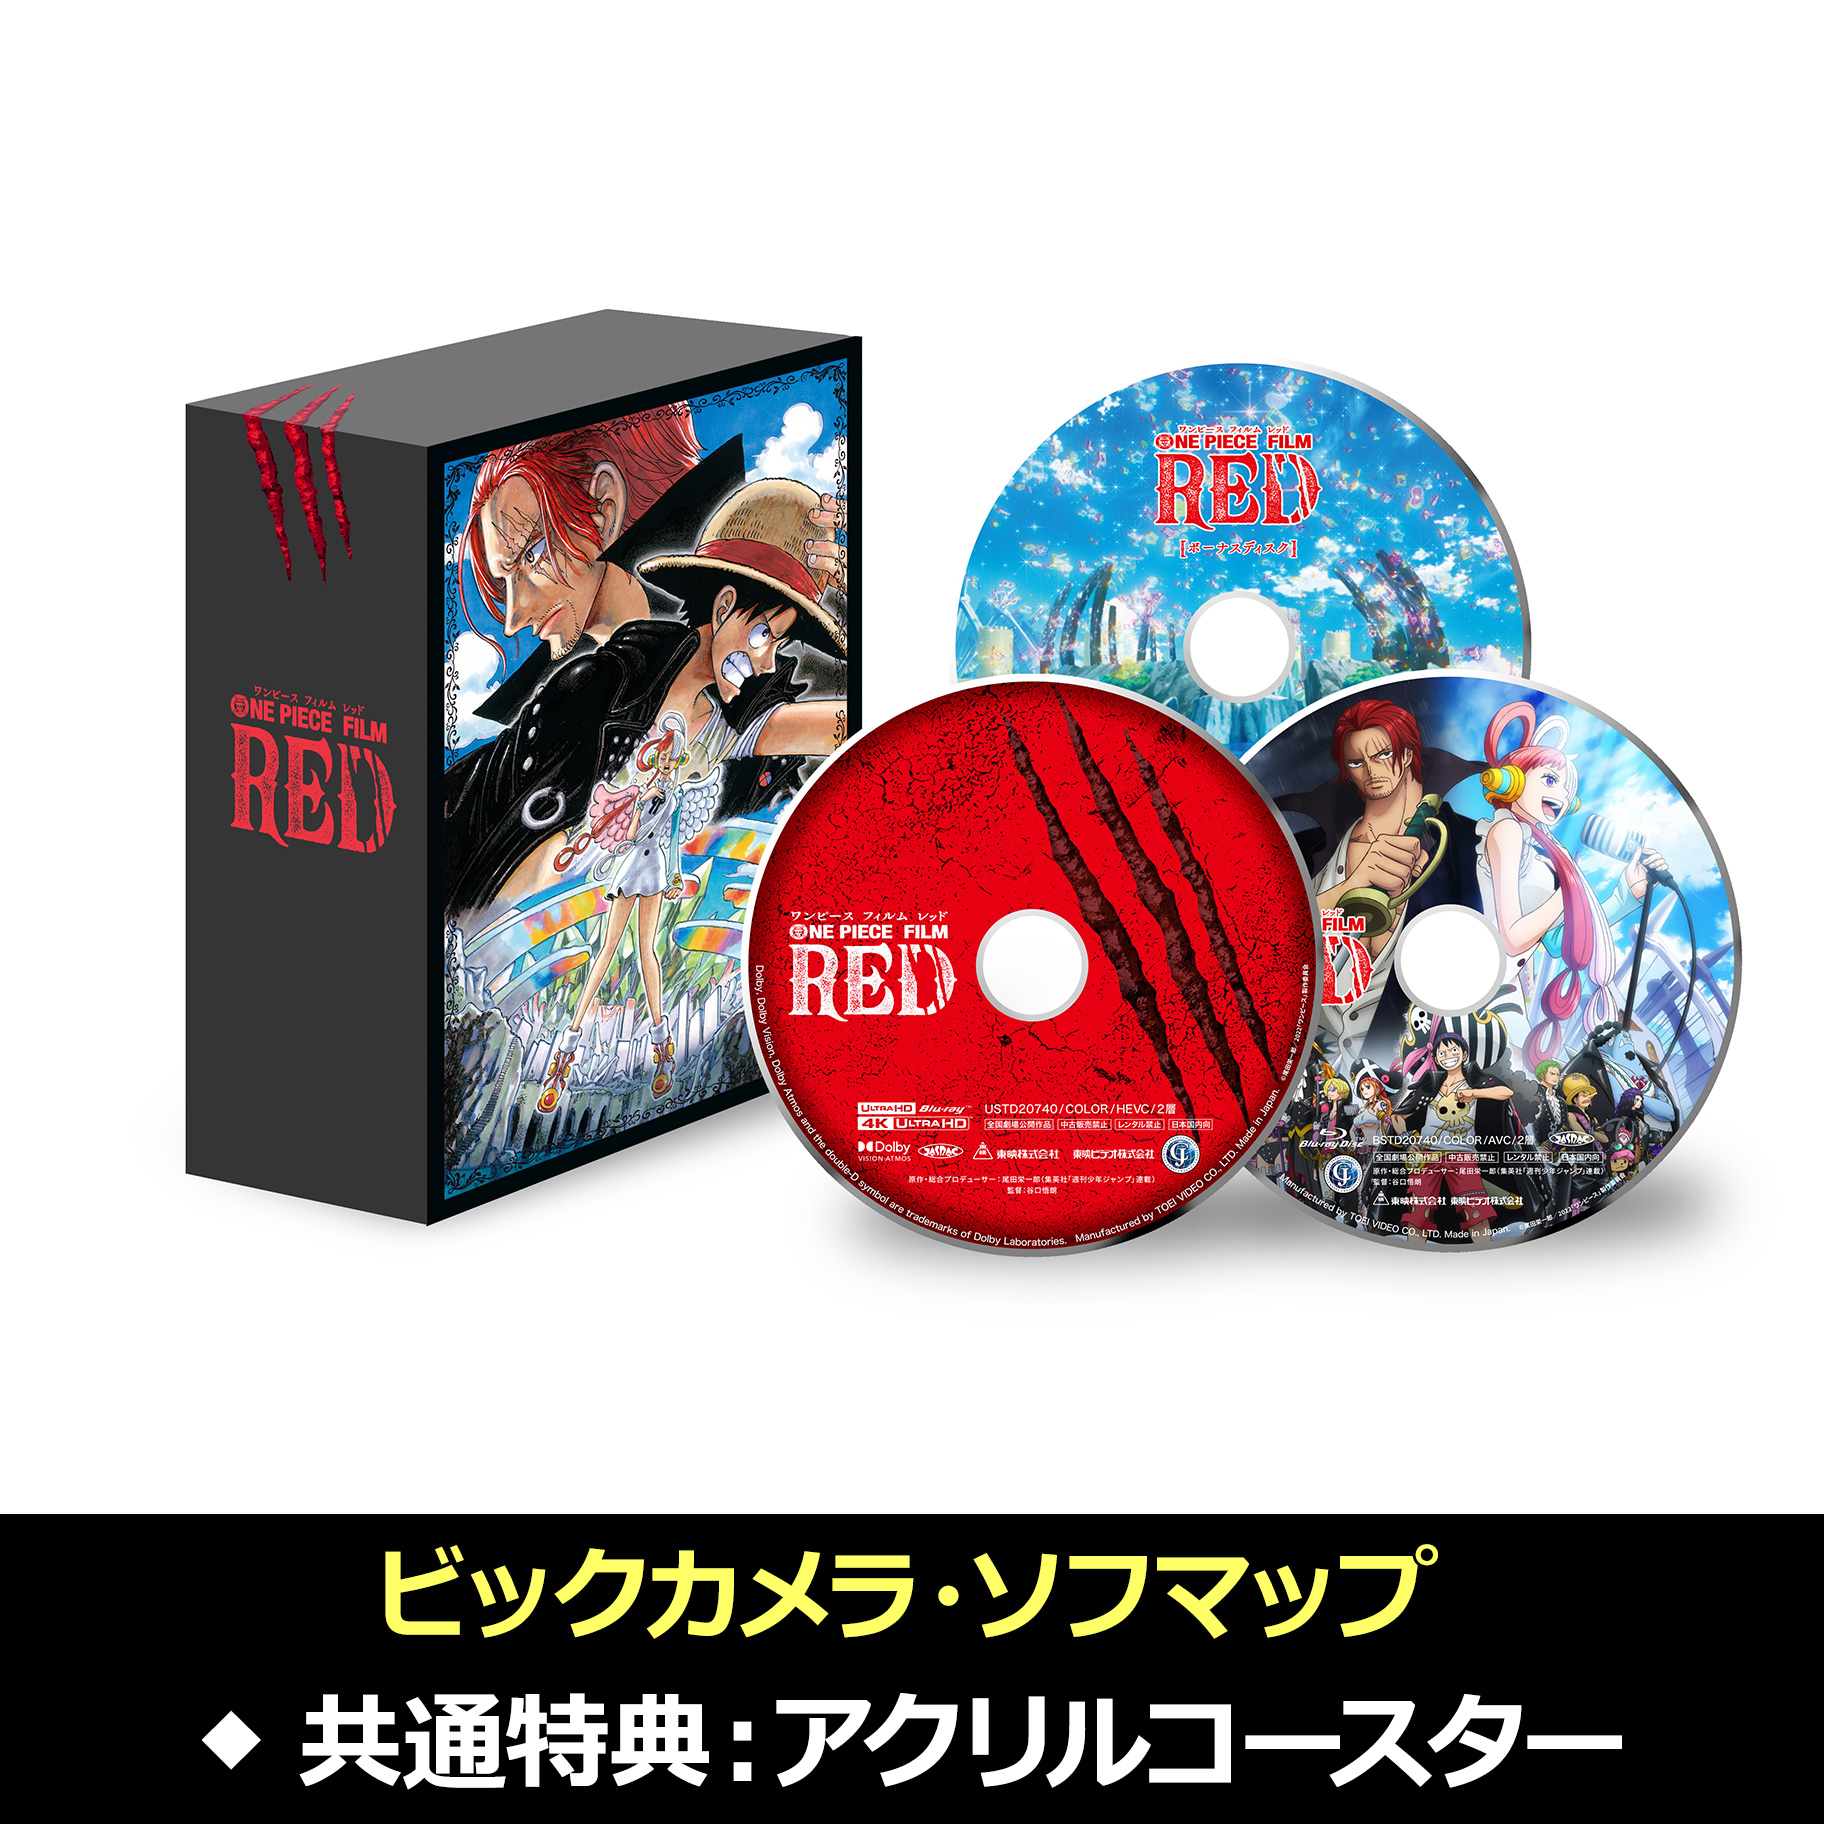 虫籠の錠前 Blu-ray Disc Box